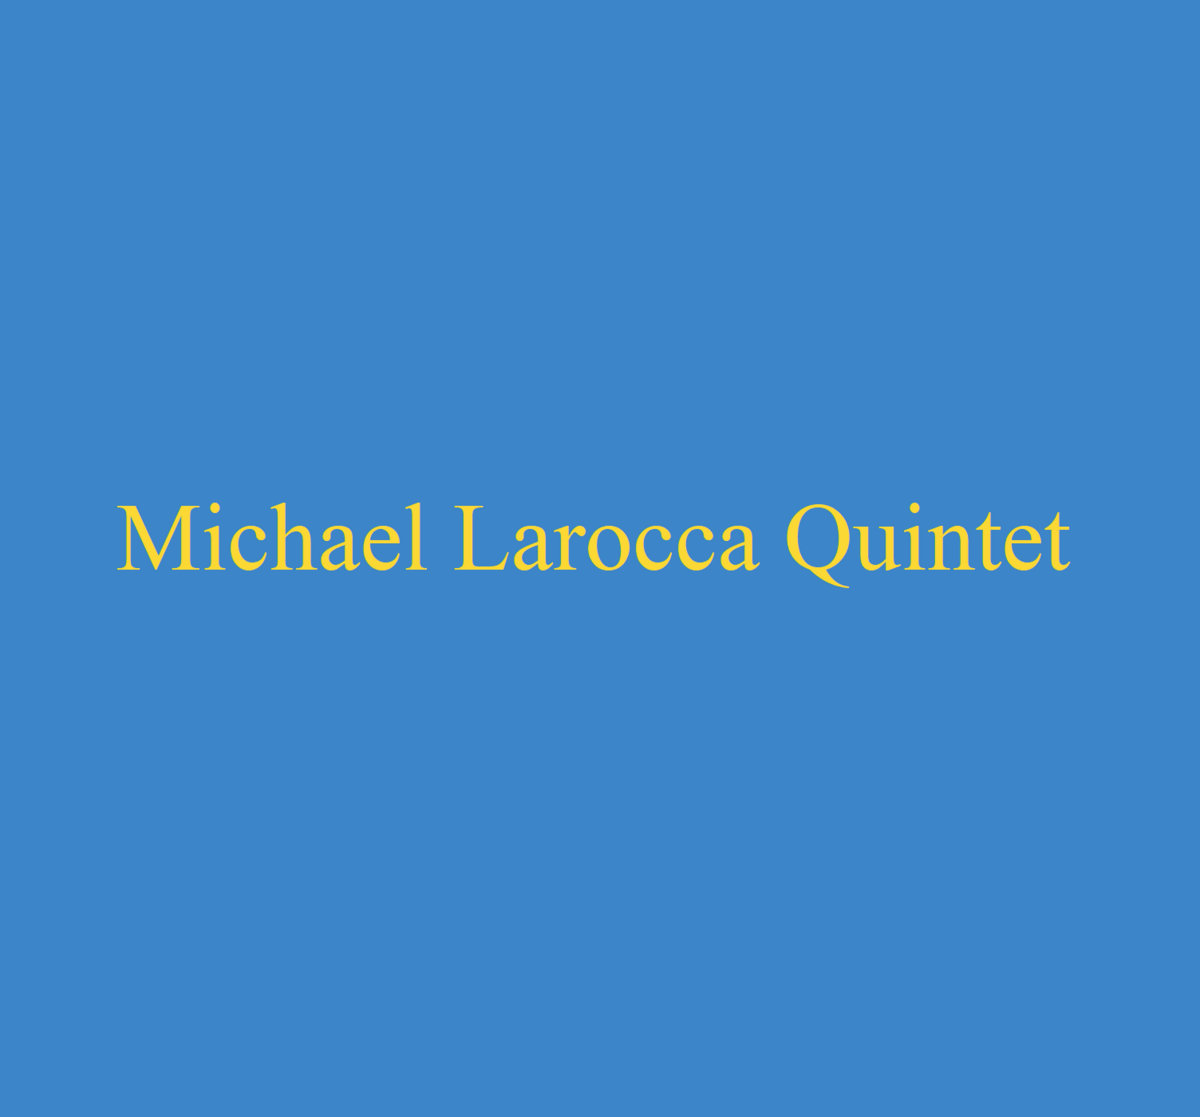 Review: Michael Larocca Quintet